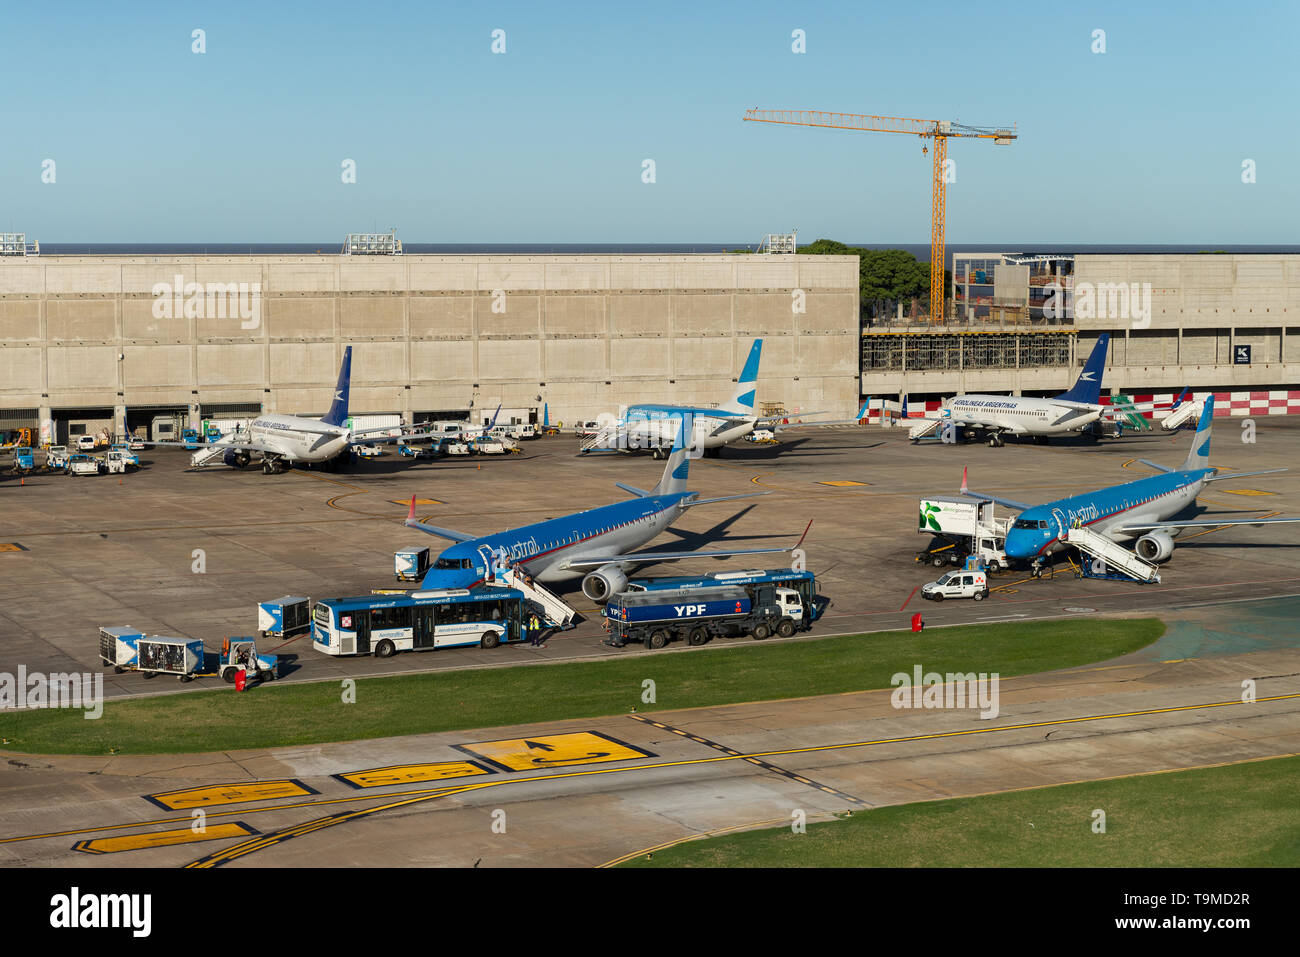 Immagine aerea mostra piani di tipo Embraer ERJ-190AR della società Austral imbarco a Jorge Newbery Airfield (spagnolo: "L'Aeroporto Aeroparque Jorge Newbery', Foto Stock